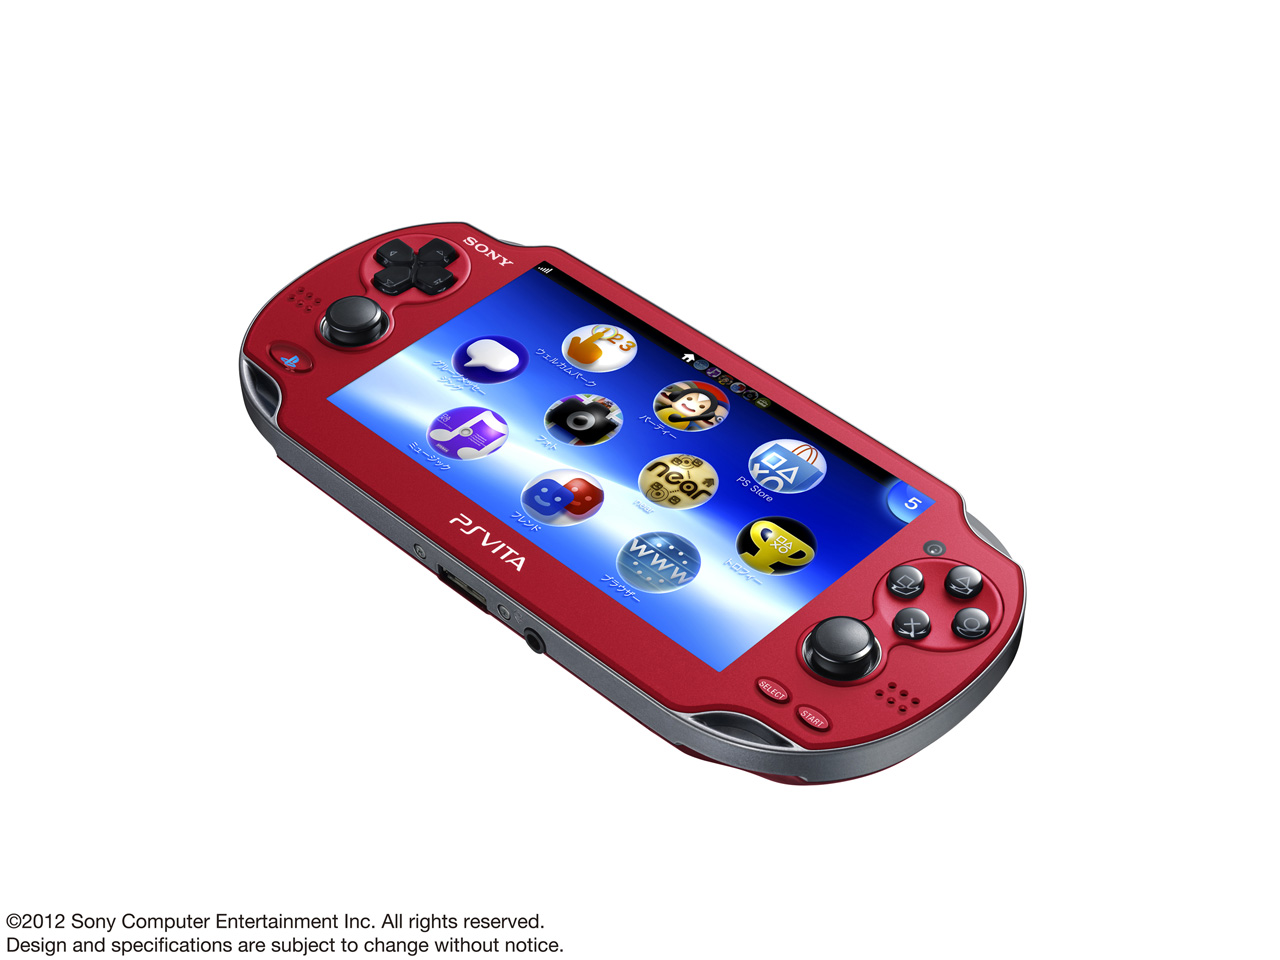 価格.com - 『メニュー表示2』 PlayStation Vita (プレイステーション ヴィータ) Wi-Fiモデル PCH-1000 ZA03 [コズミック・レッド] の製品画像